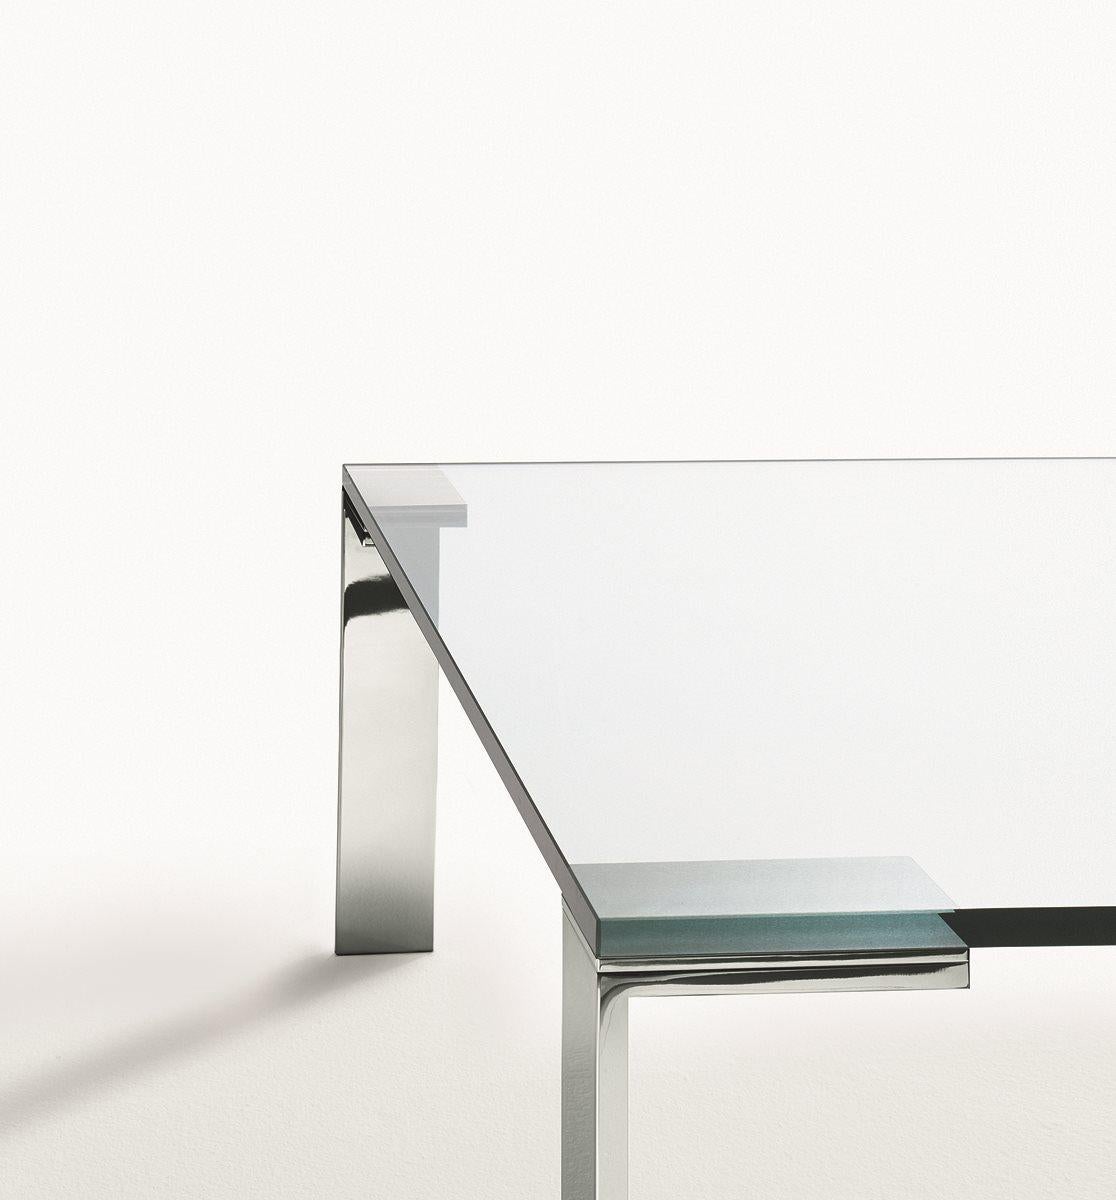 Liko Glas entworfen von Arik Levy 
Die Leichtigkeit des Glases erzeugt einen mimetischen Effekt und spielt eine Hauptrolle in jeder zeitgenössischen Wohn- oder Lebenssituation. Liko Glass passt wie immer perfekt in jede Umgebung.